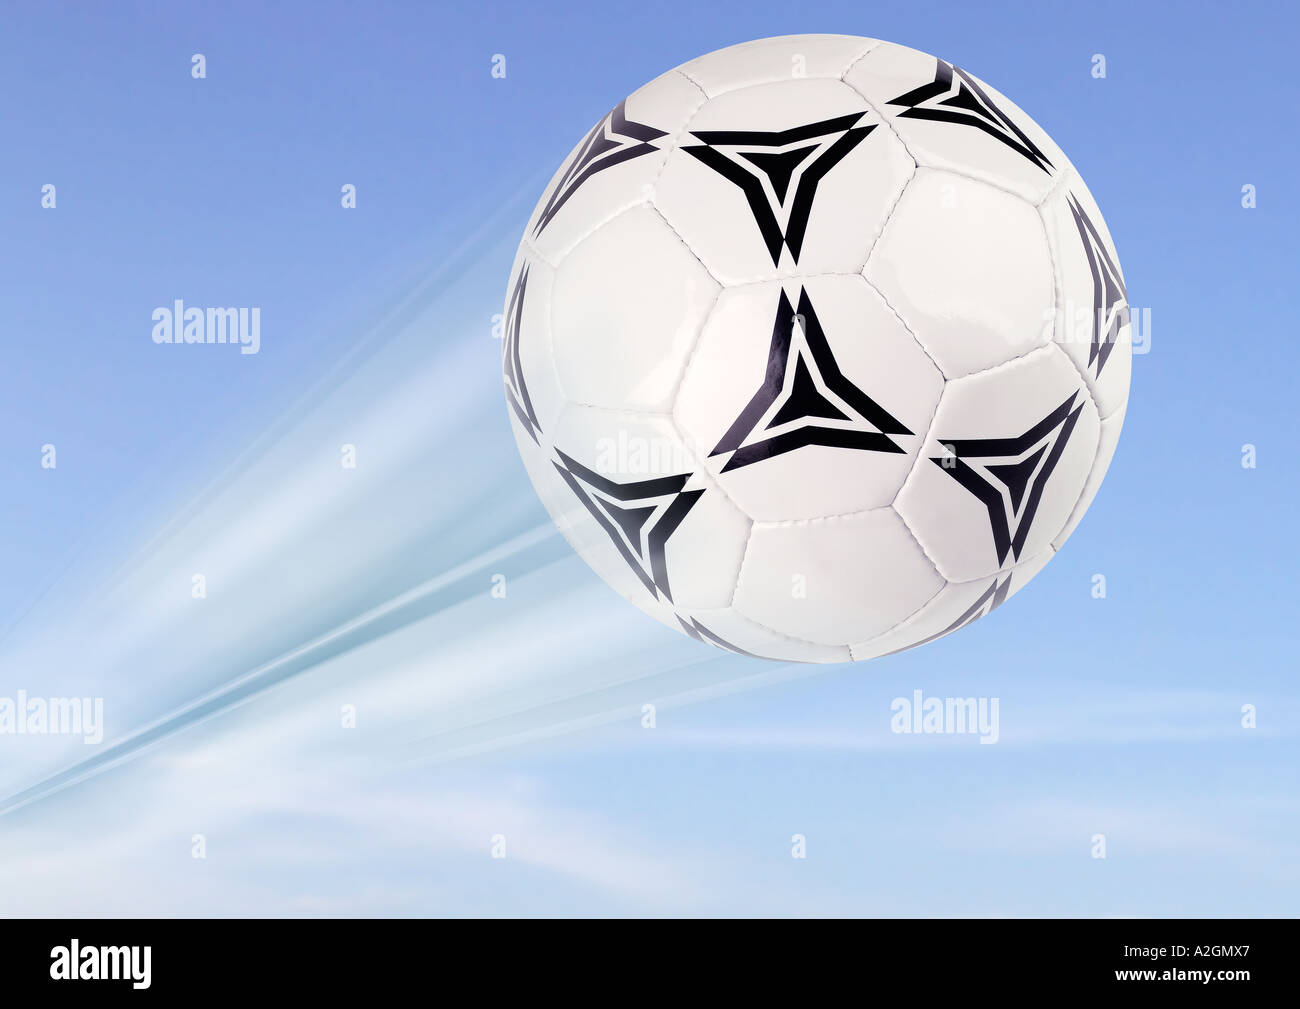 Fußball balón de fútbol Foto de stock